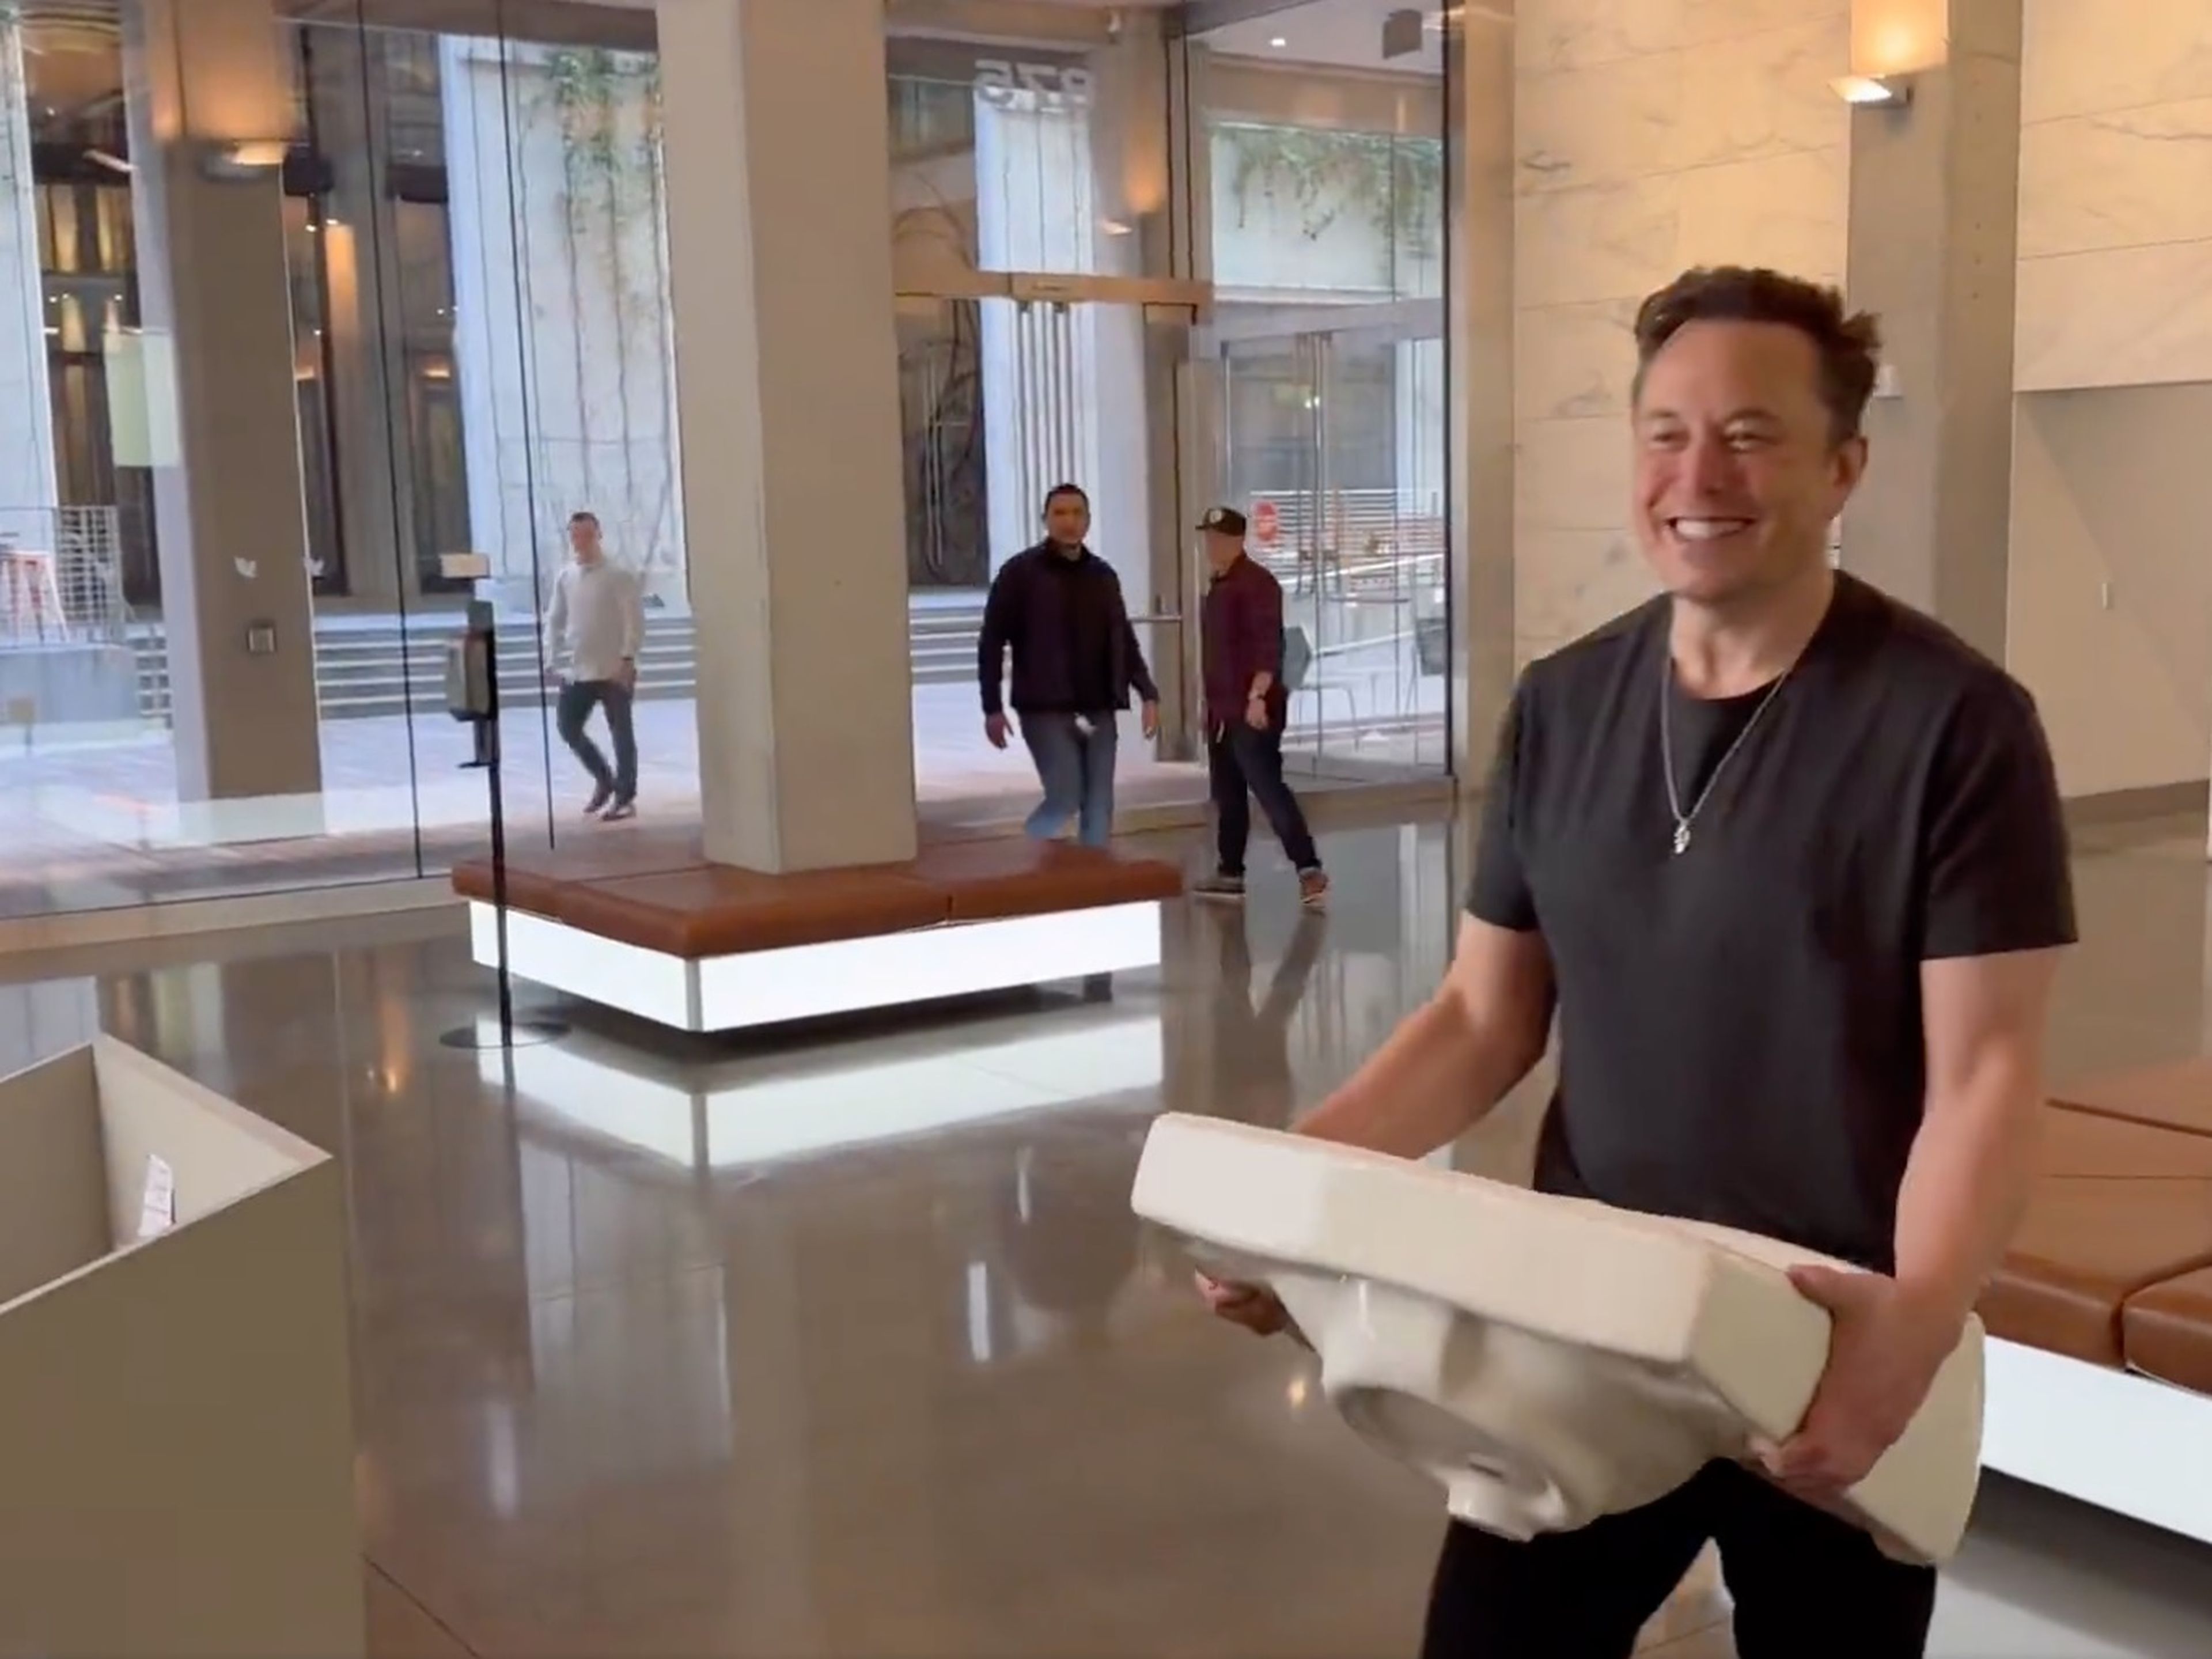 Elon Musk sujetando un fregadero, en un intento por gastar una broma.